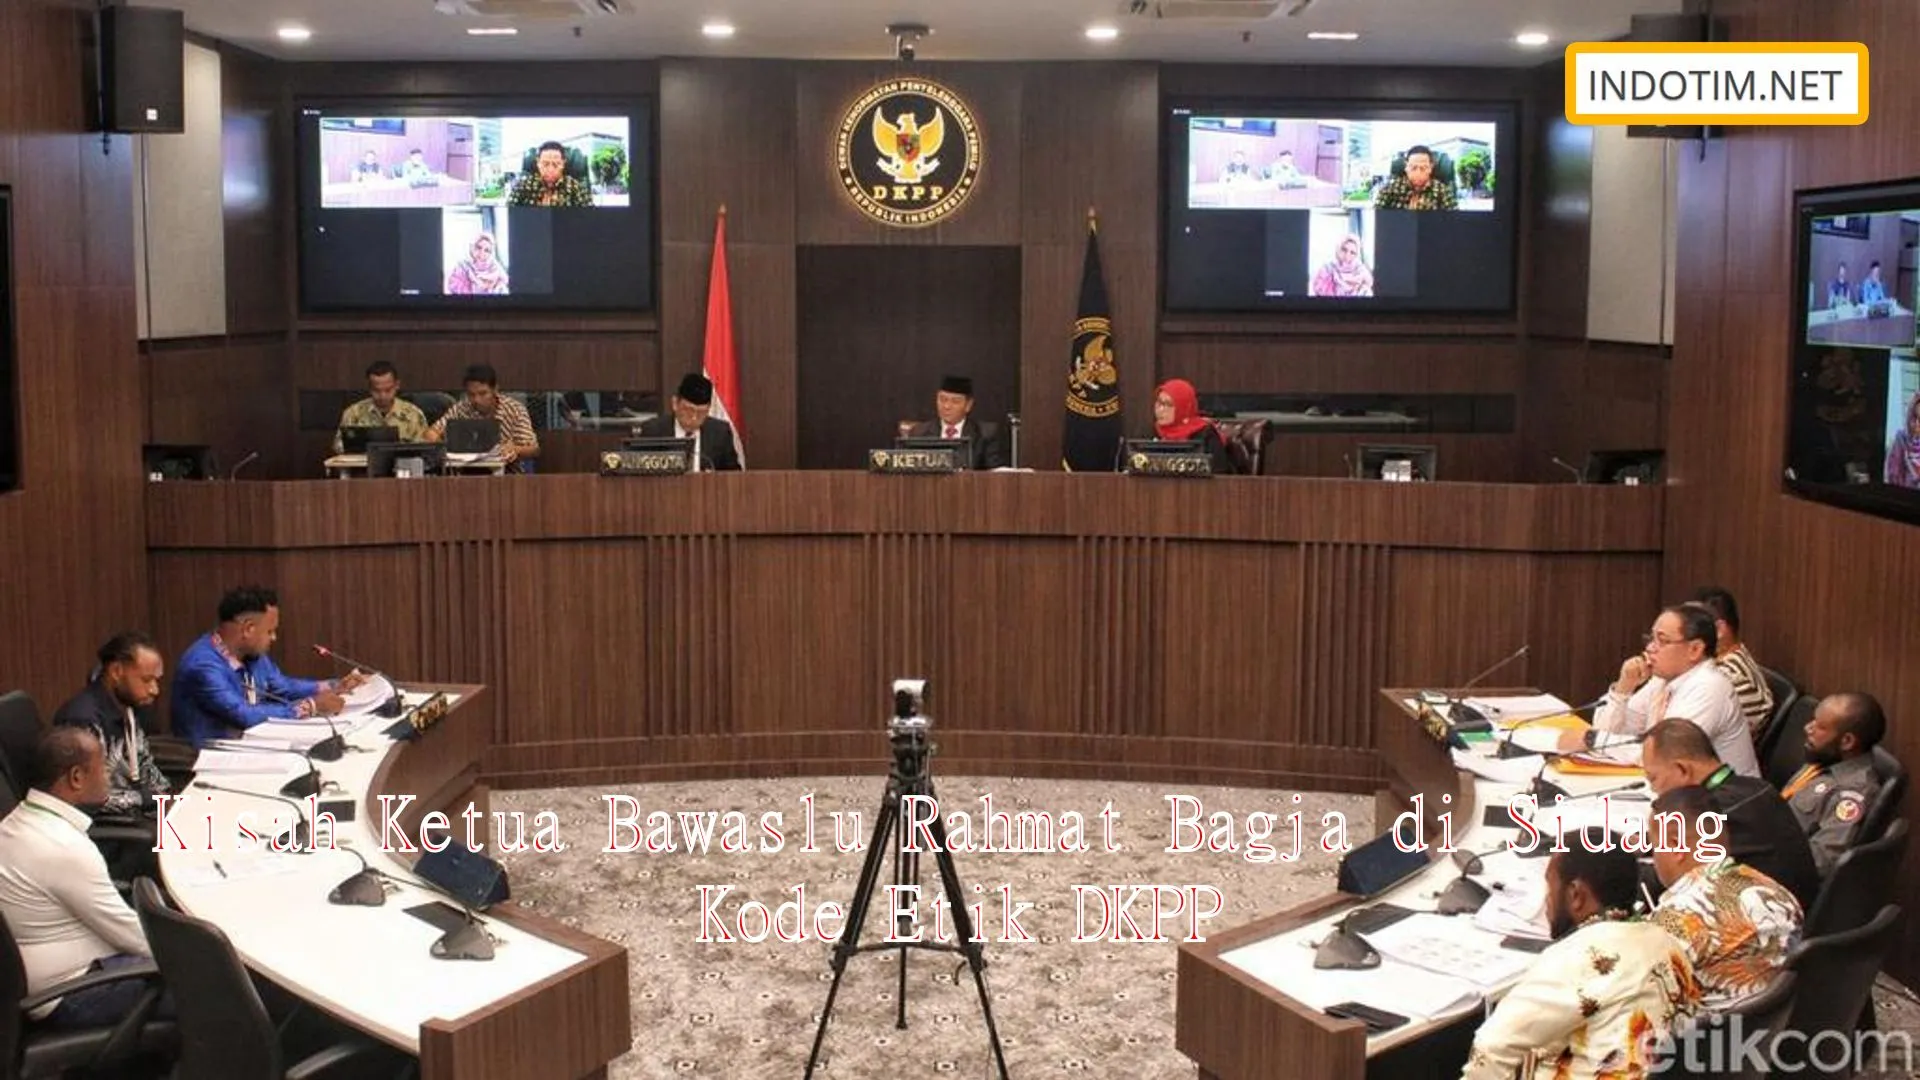 Kisah Ketua Bawaslu Rahmat Bagja di Sidang Kode Etik DKPP